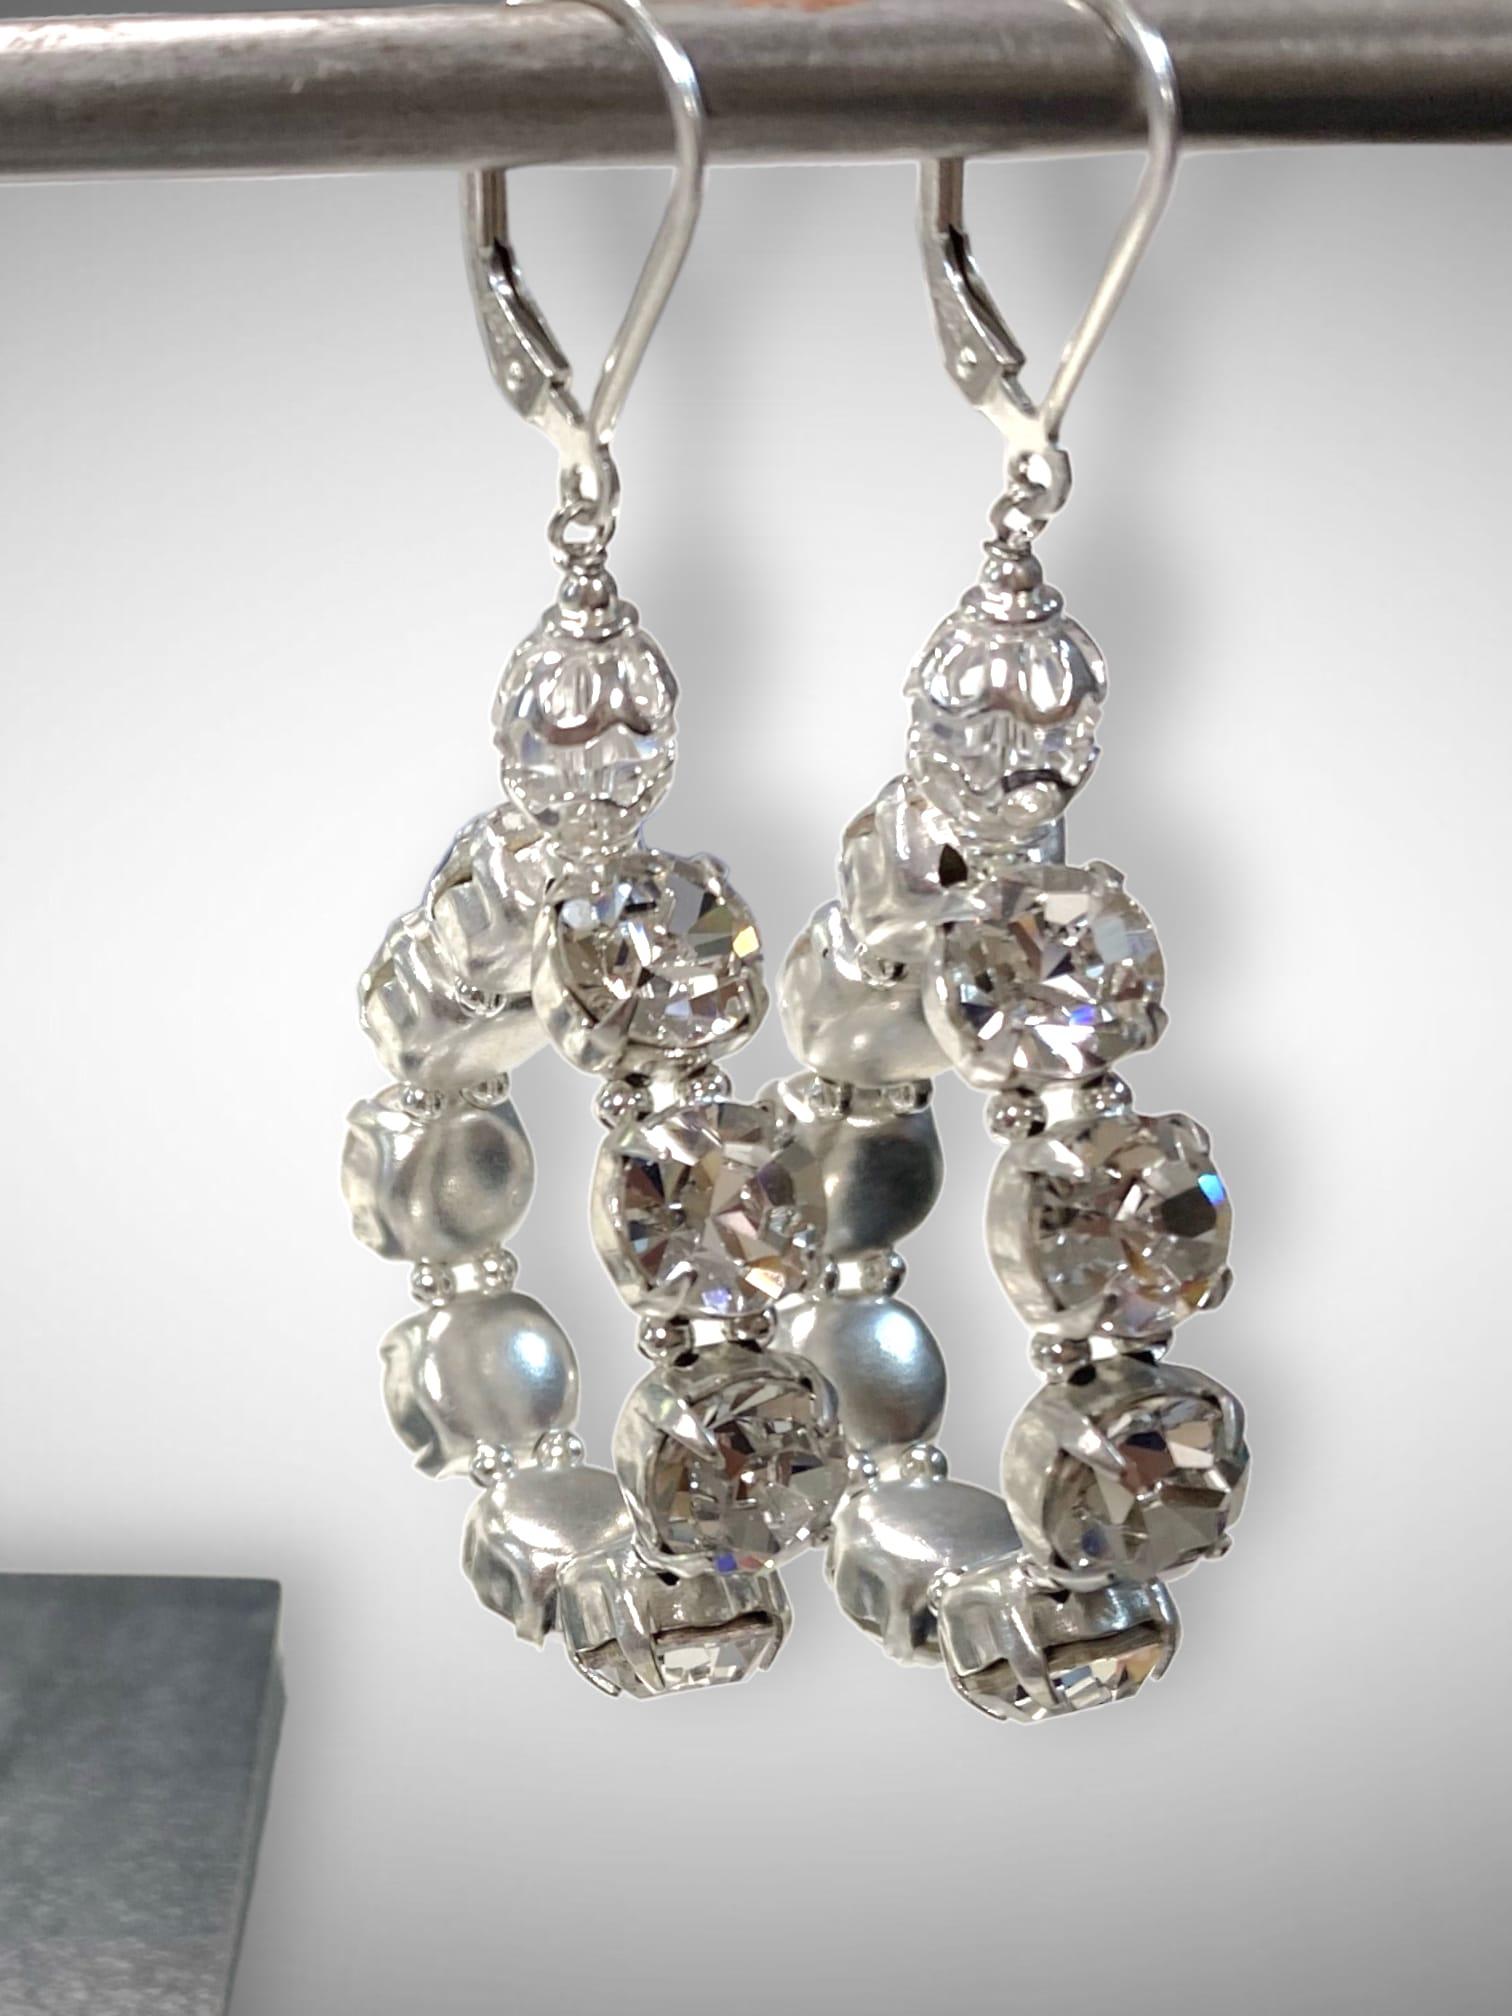 Glitter Earring Kit - Jewelry Making Kits – Too Cute Beads